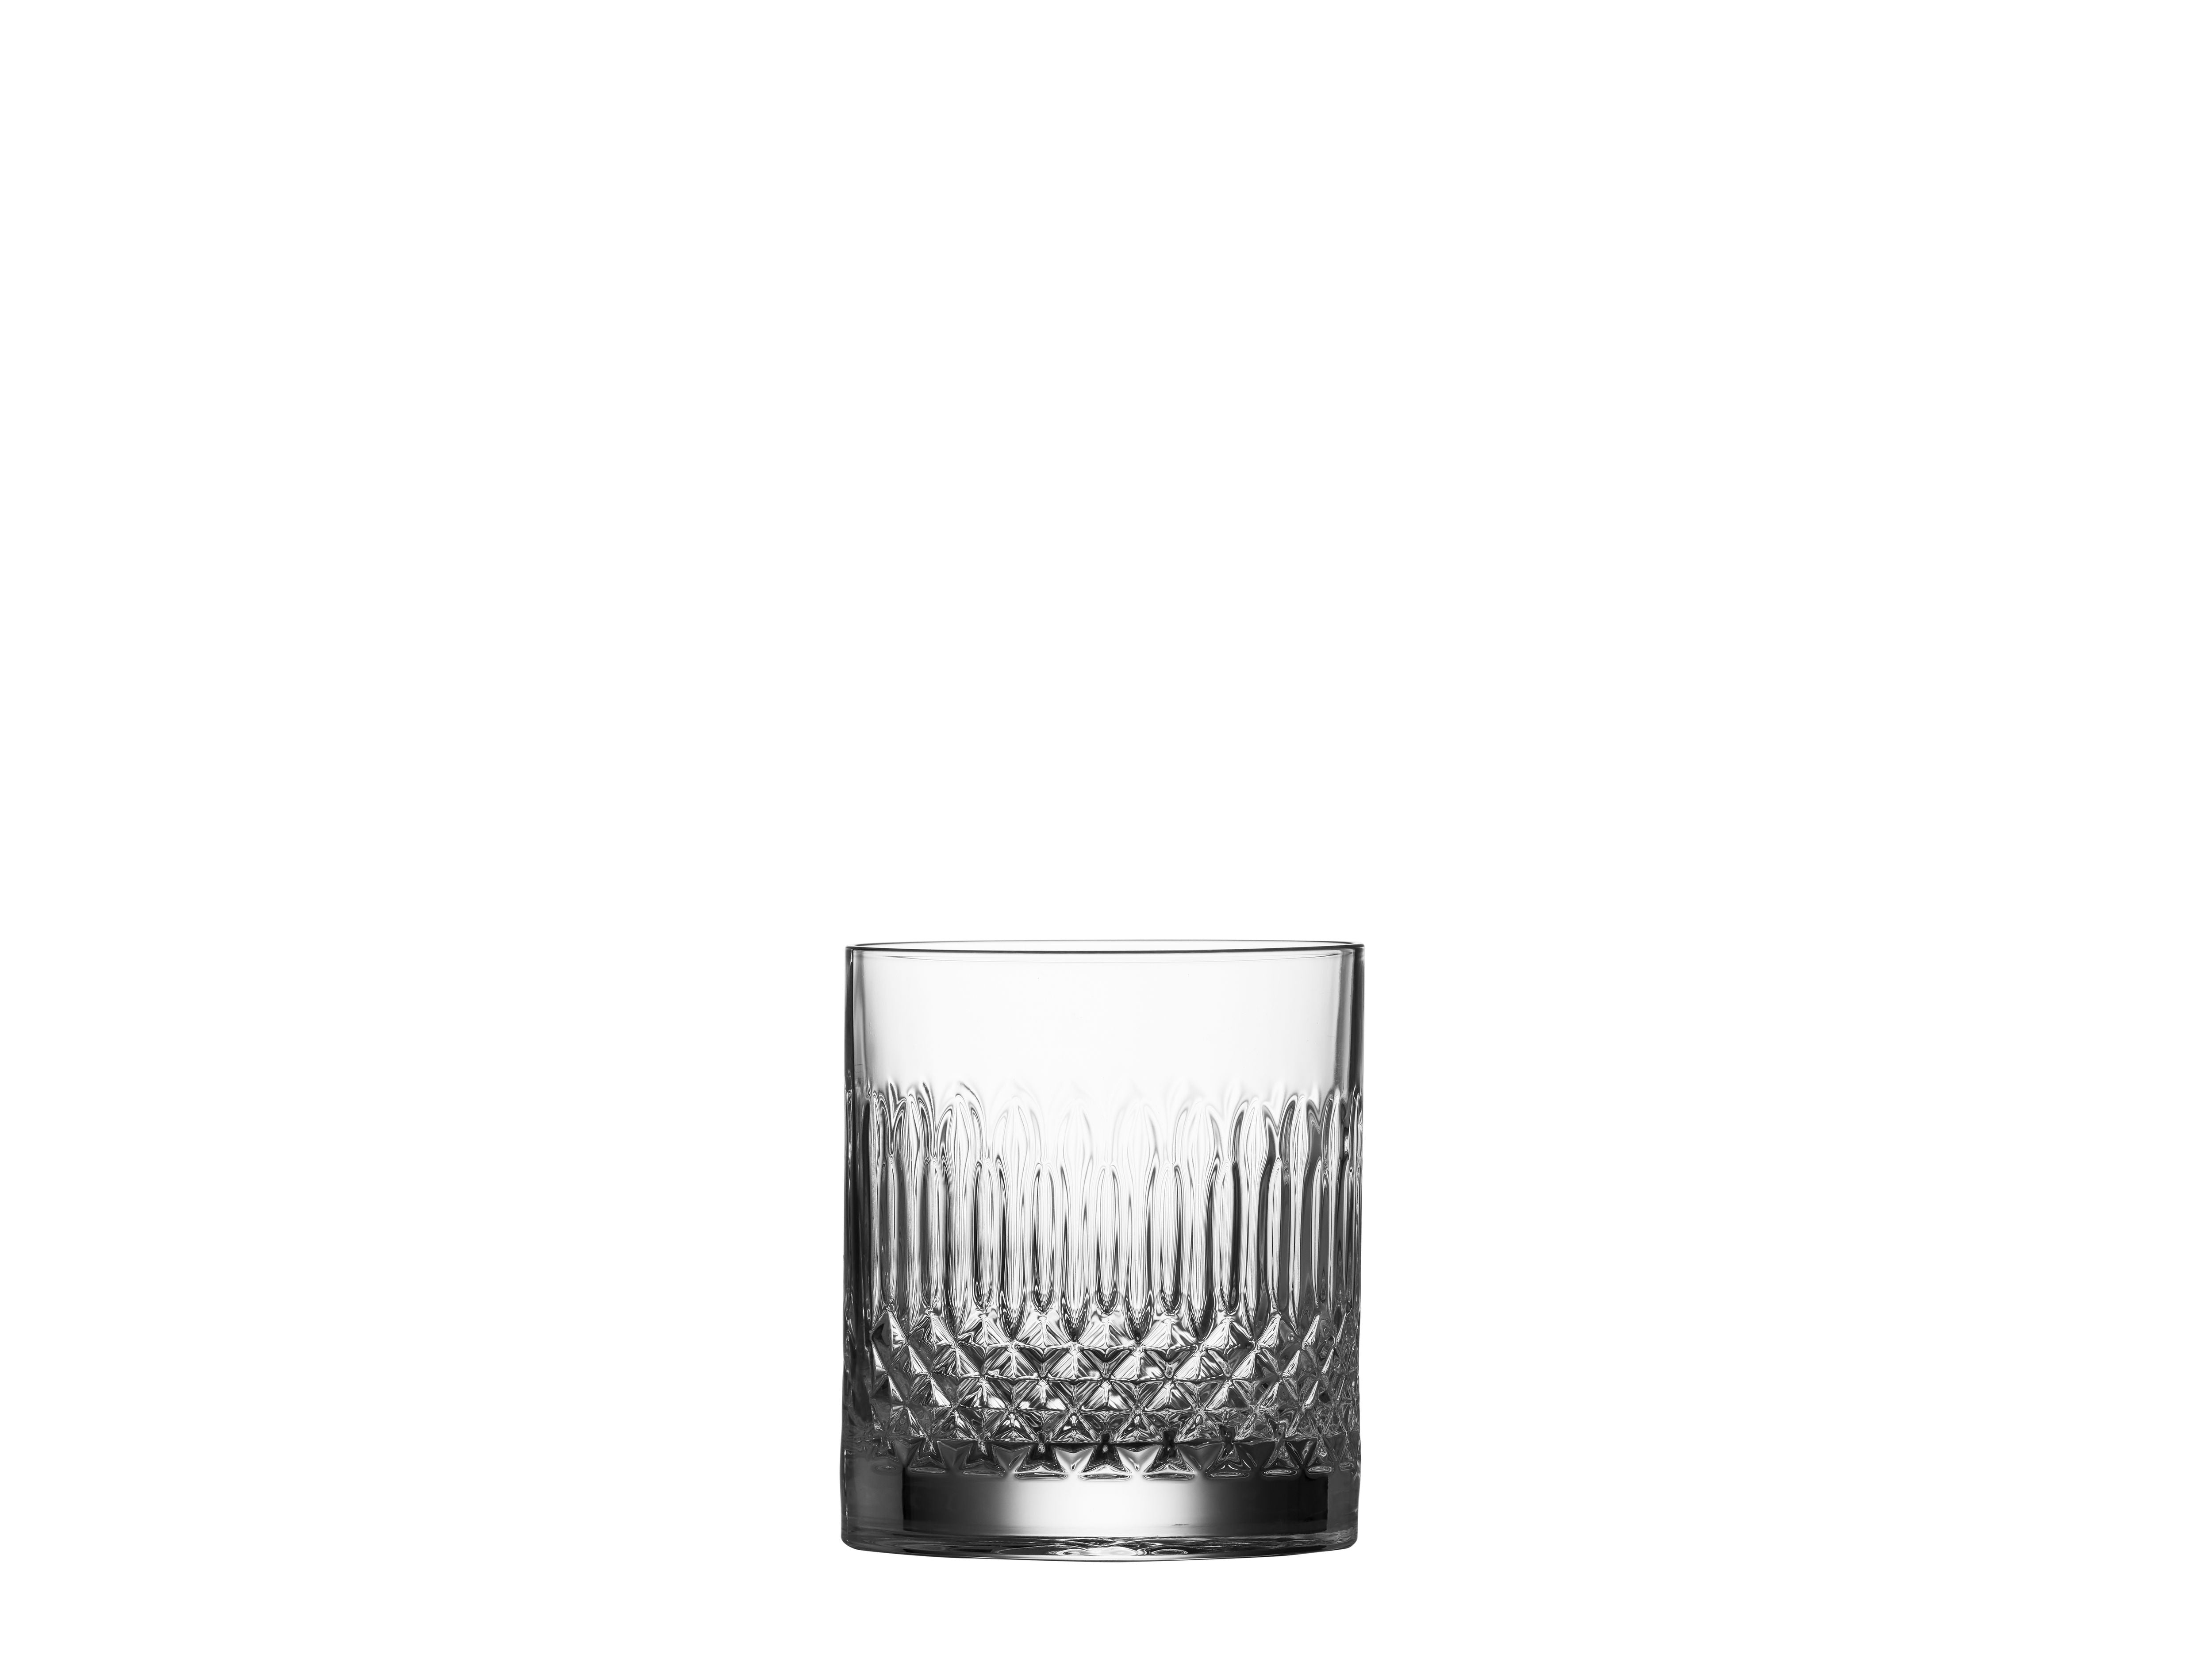 Luigi Bormioli Diamante vandglas/whisky glas, sæt på 4